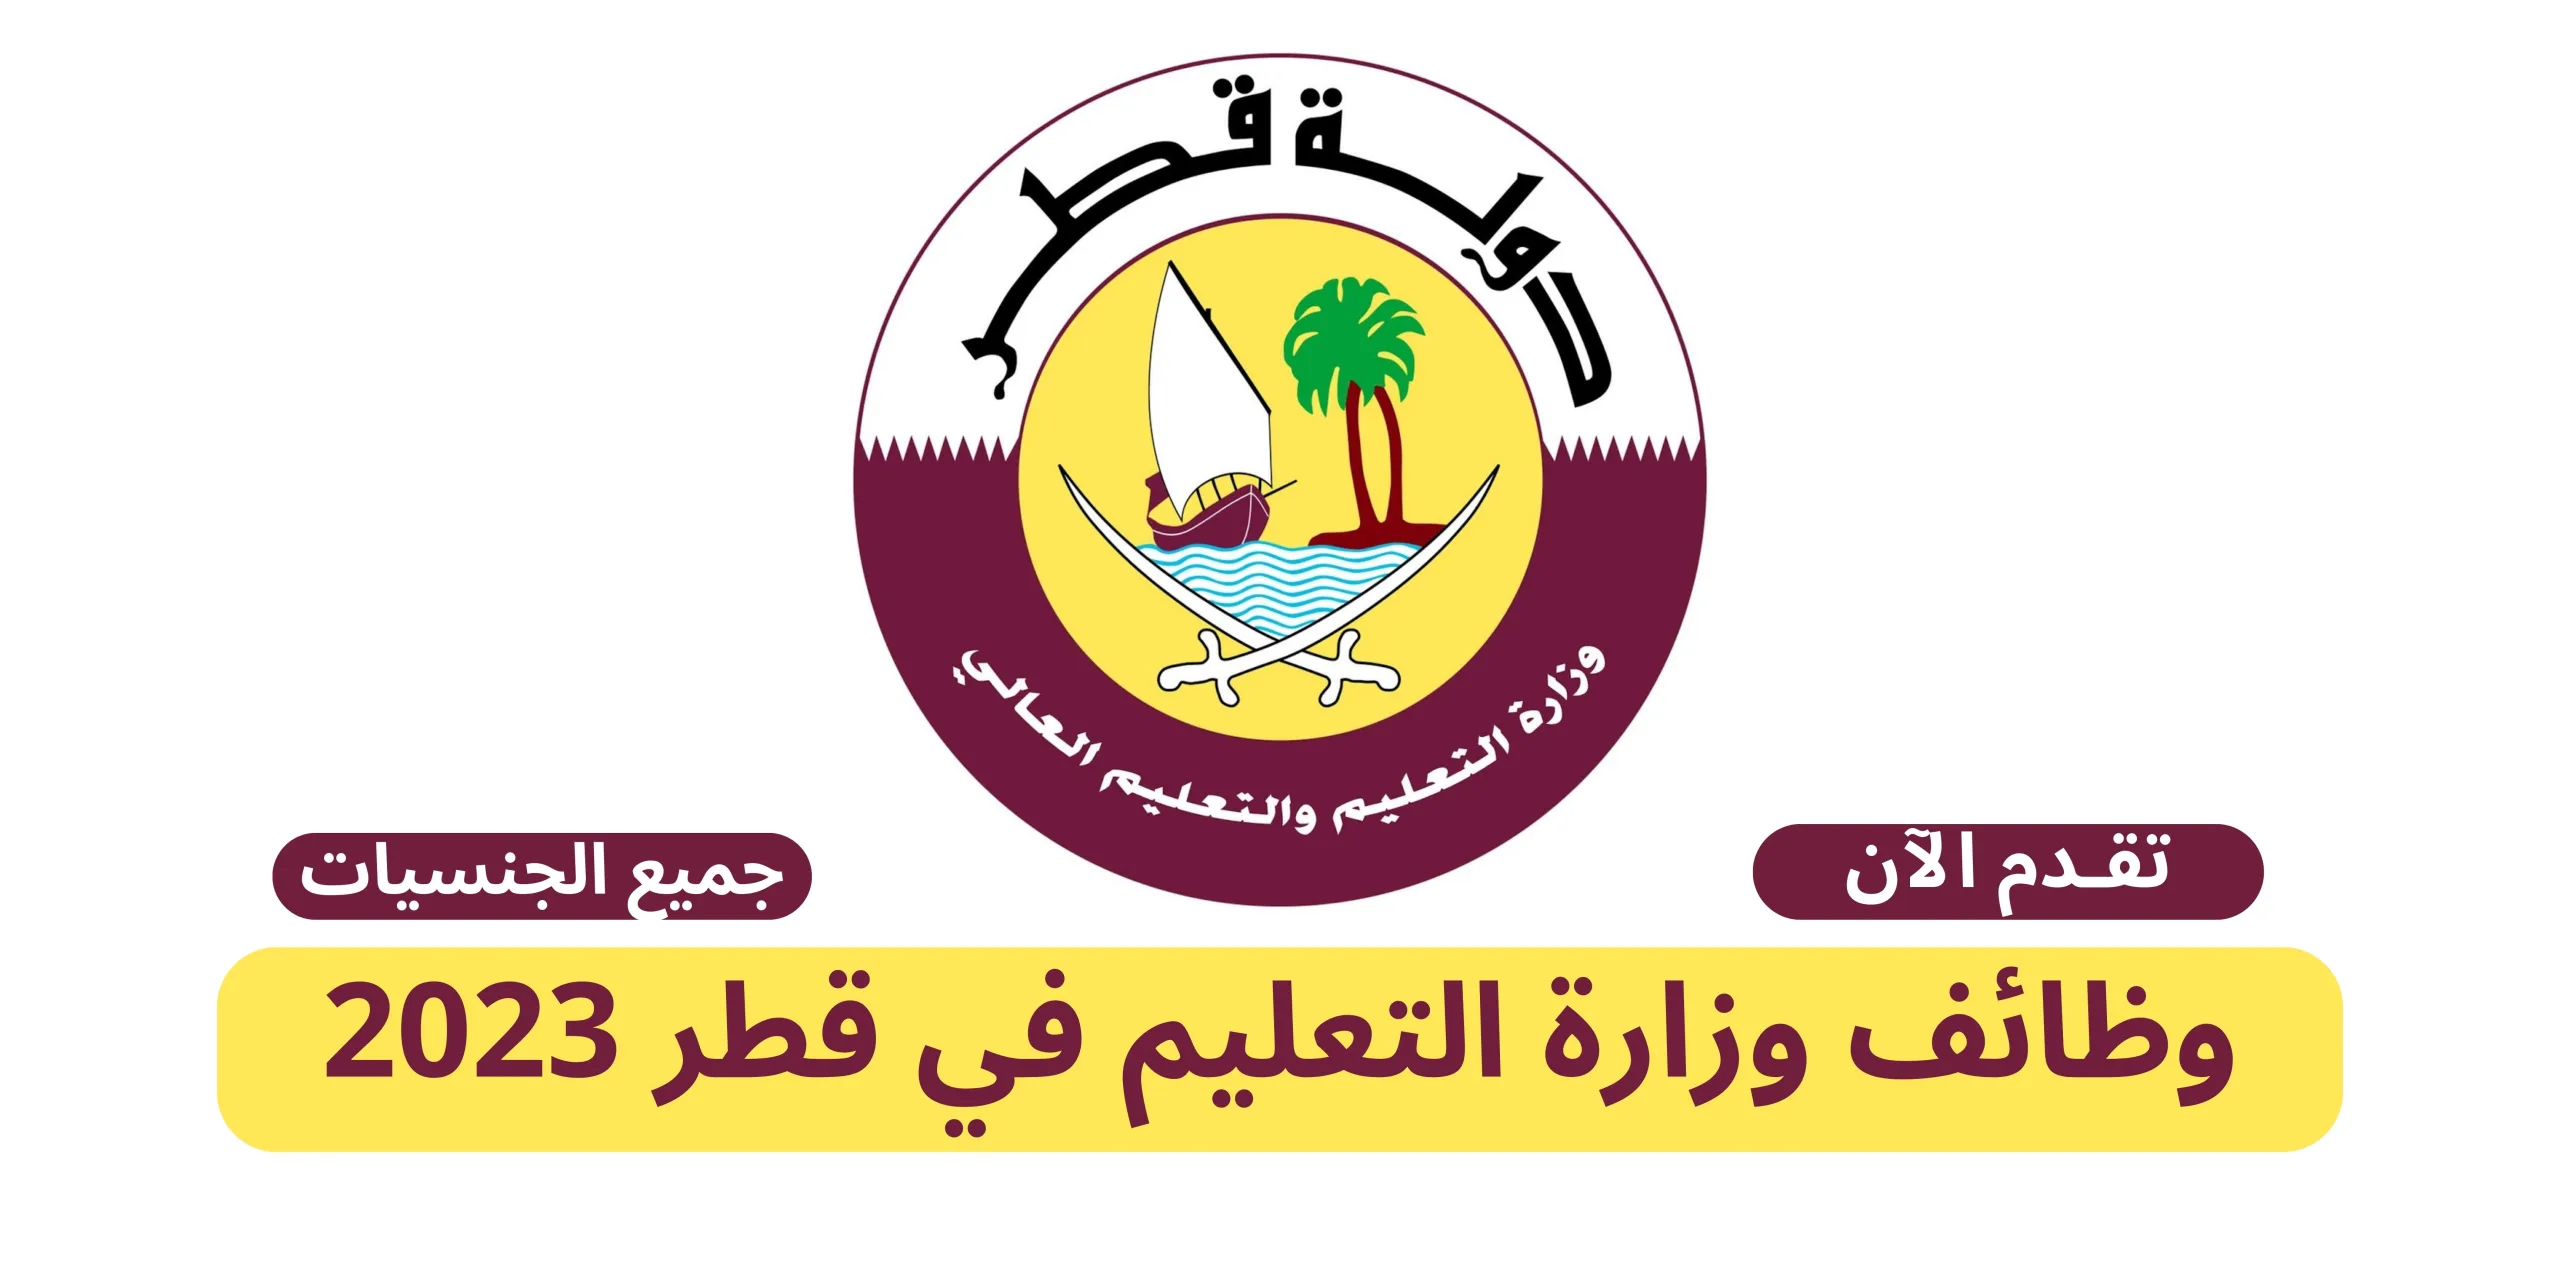 وزارة التربية والتعليم قطر تعلن وظائف معلمين ومعلمات وإداريين للعام 2023 / 2024